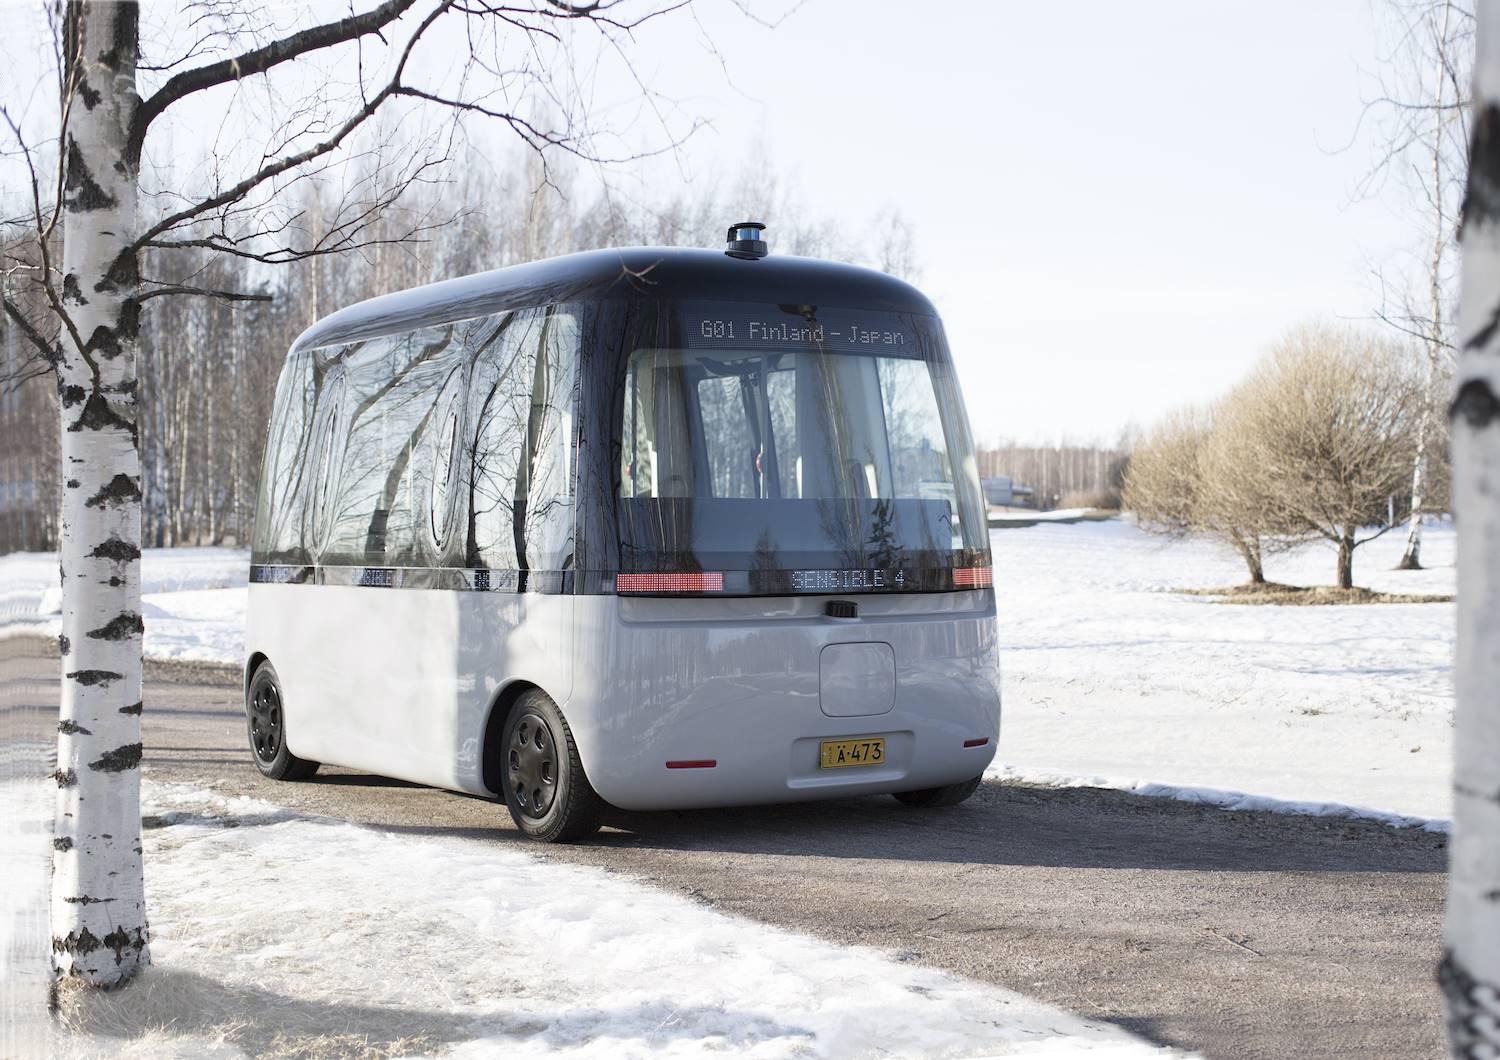 Autobus electrico en Finlandia de Muji. En 2021 circulará de forma regular, sirviendo de enlace entre 3 ciudades finlandesas.